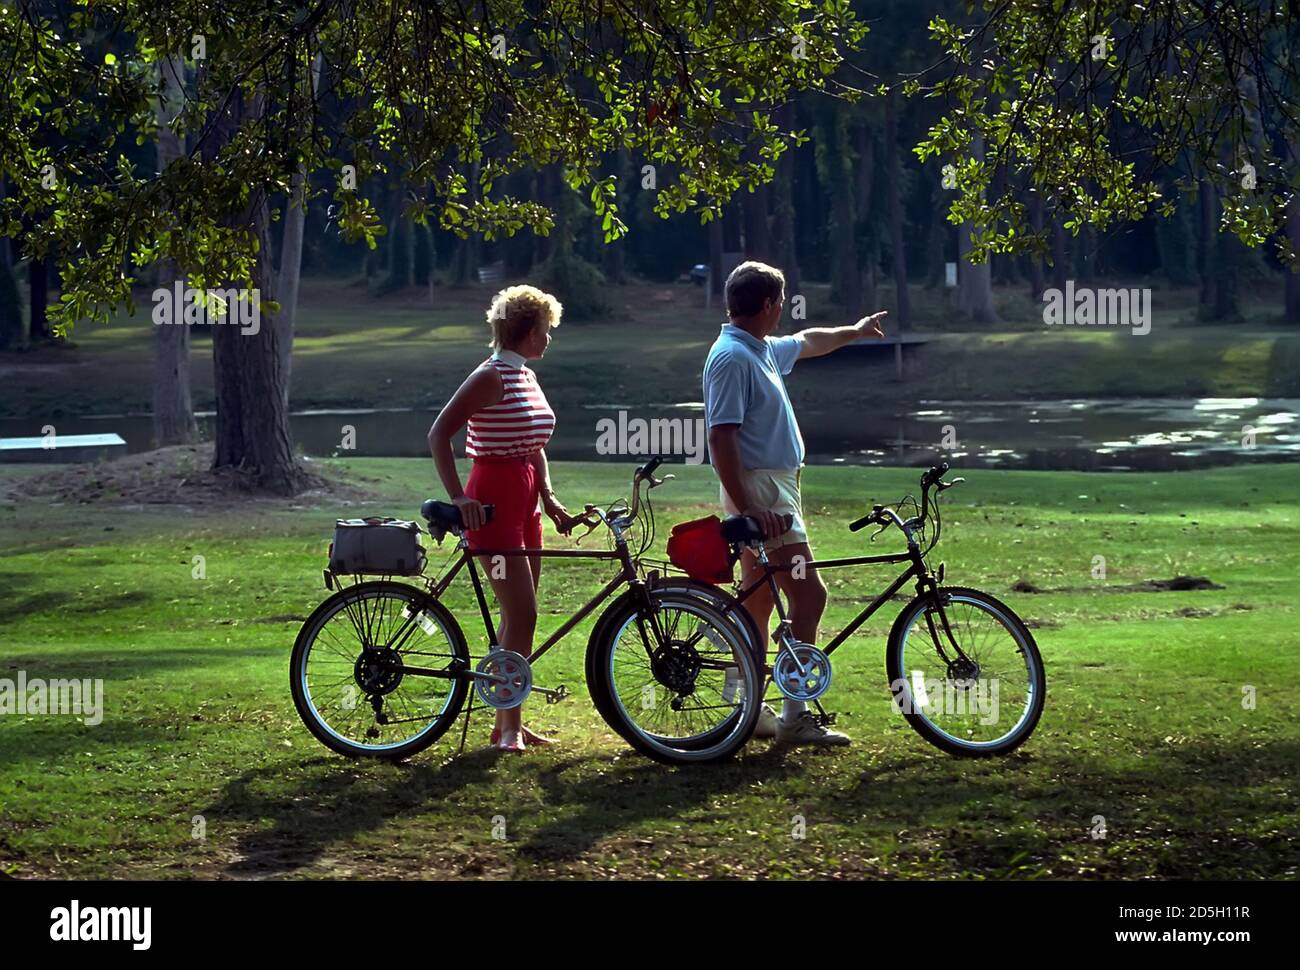 Männchen und Weibchen mit Fahrrädern zu fahren, für Bewegung und Freude Stockfoto